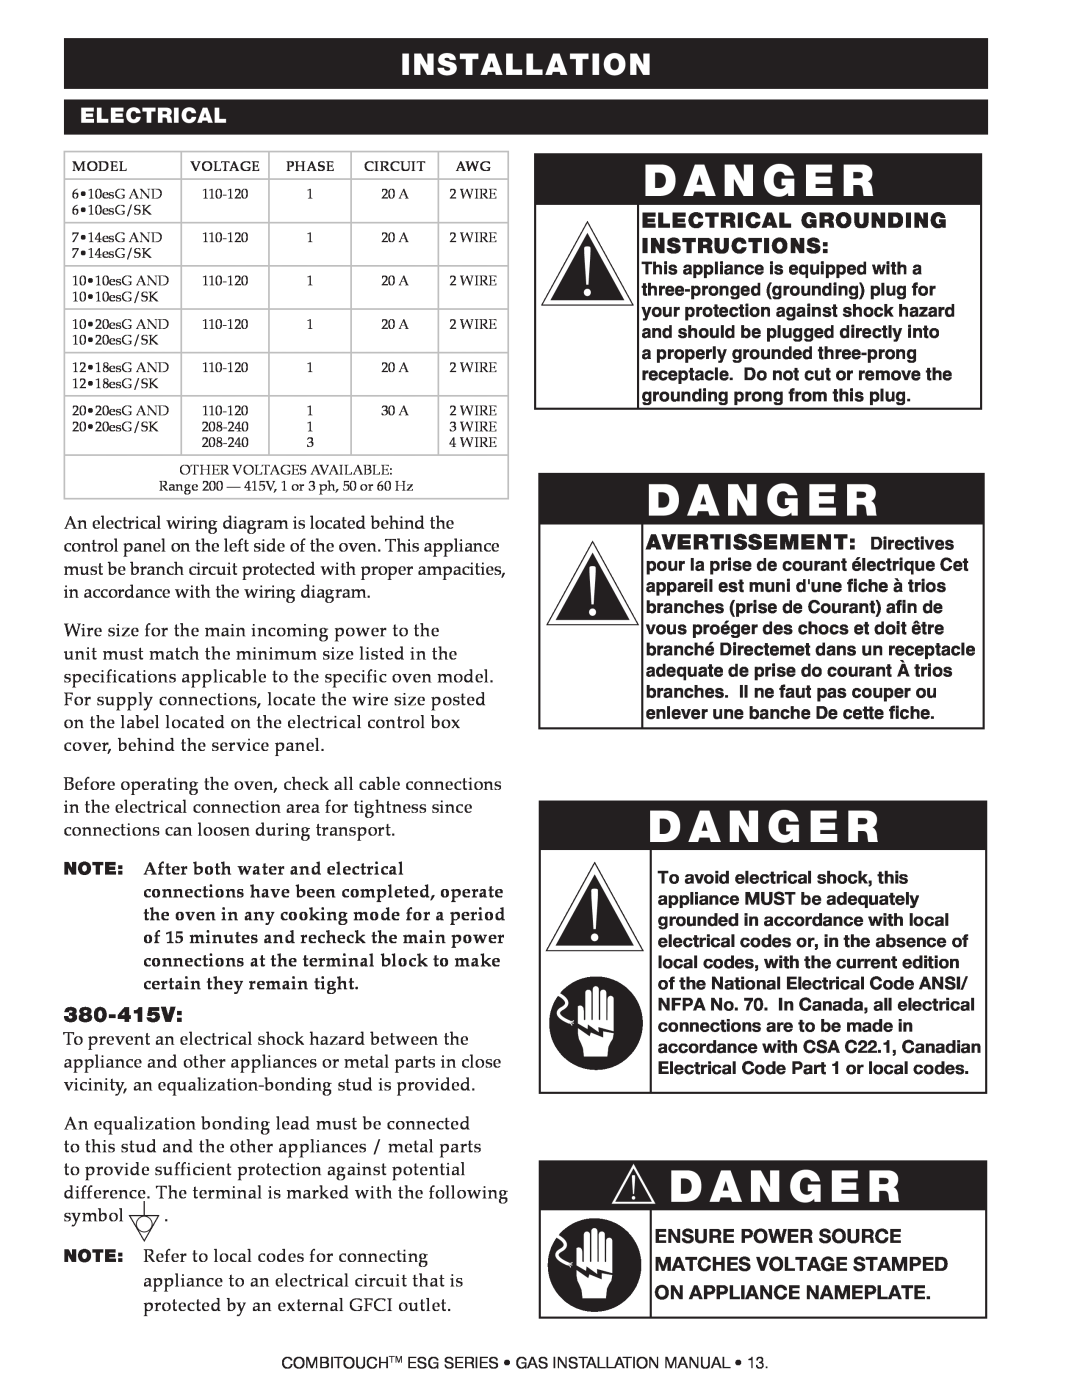 Alto-Shaam 714ESG, 1218ESG, 1010ESG manual Danger, 380-415V, Electrical Grounding Instructions, D A N G E R, Installation 